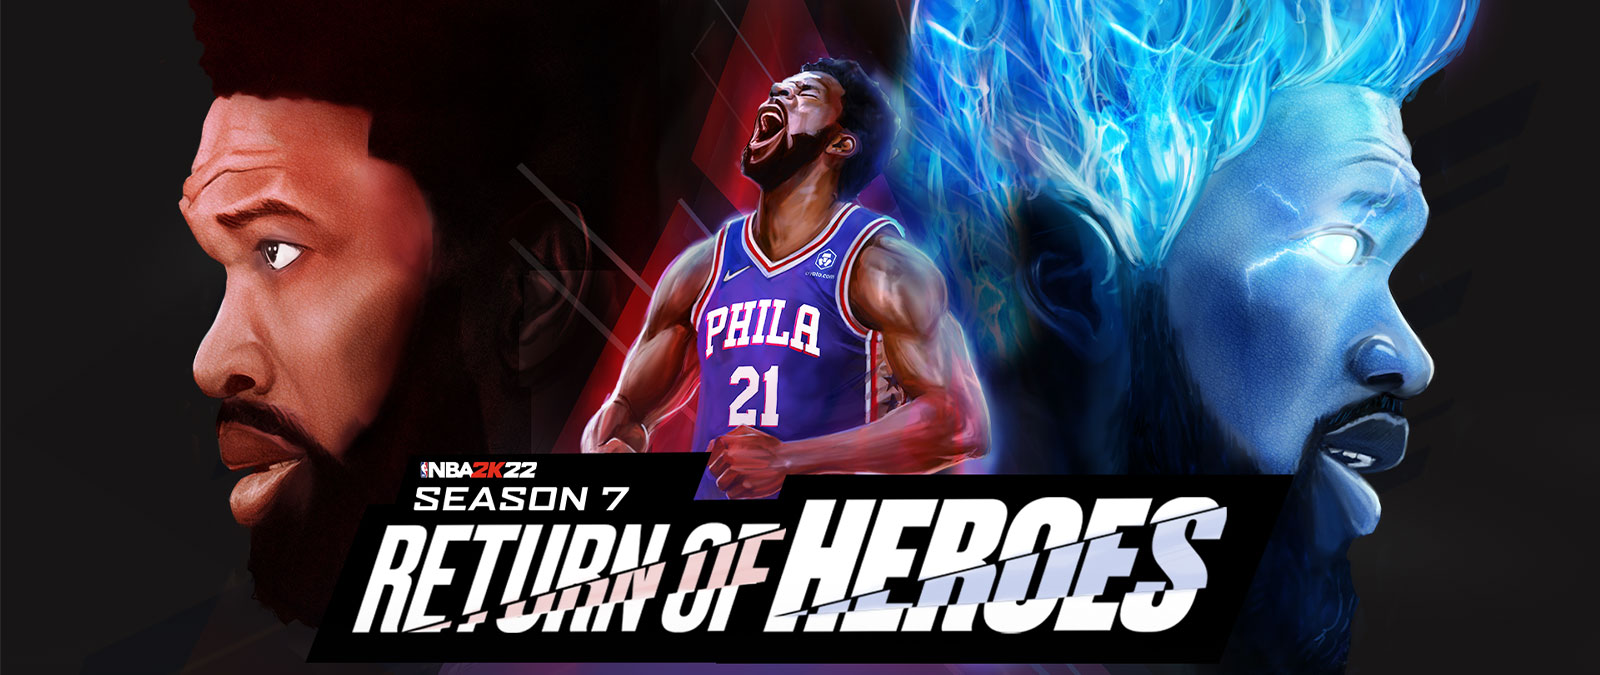 NBA 2K22, Season 7, Return of Heroes, een speler van Philadelphia schreeuwt in de lucht met blauwe vlammen om hem heen.